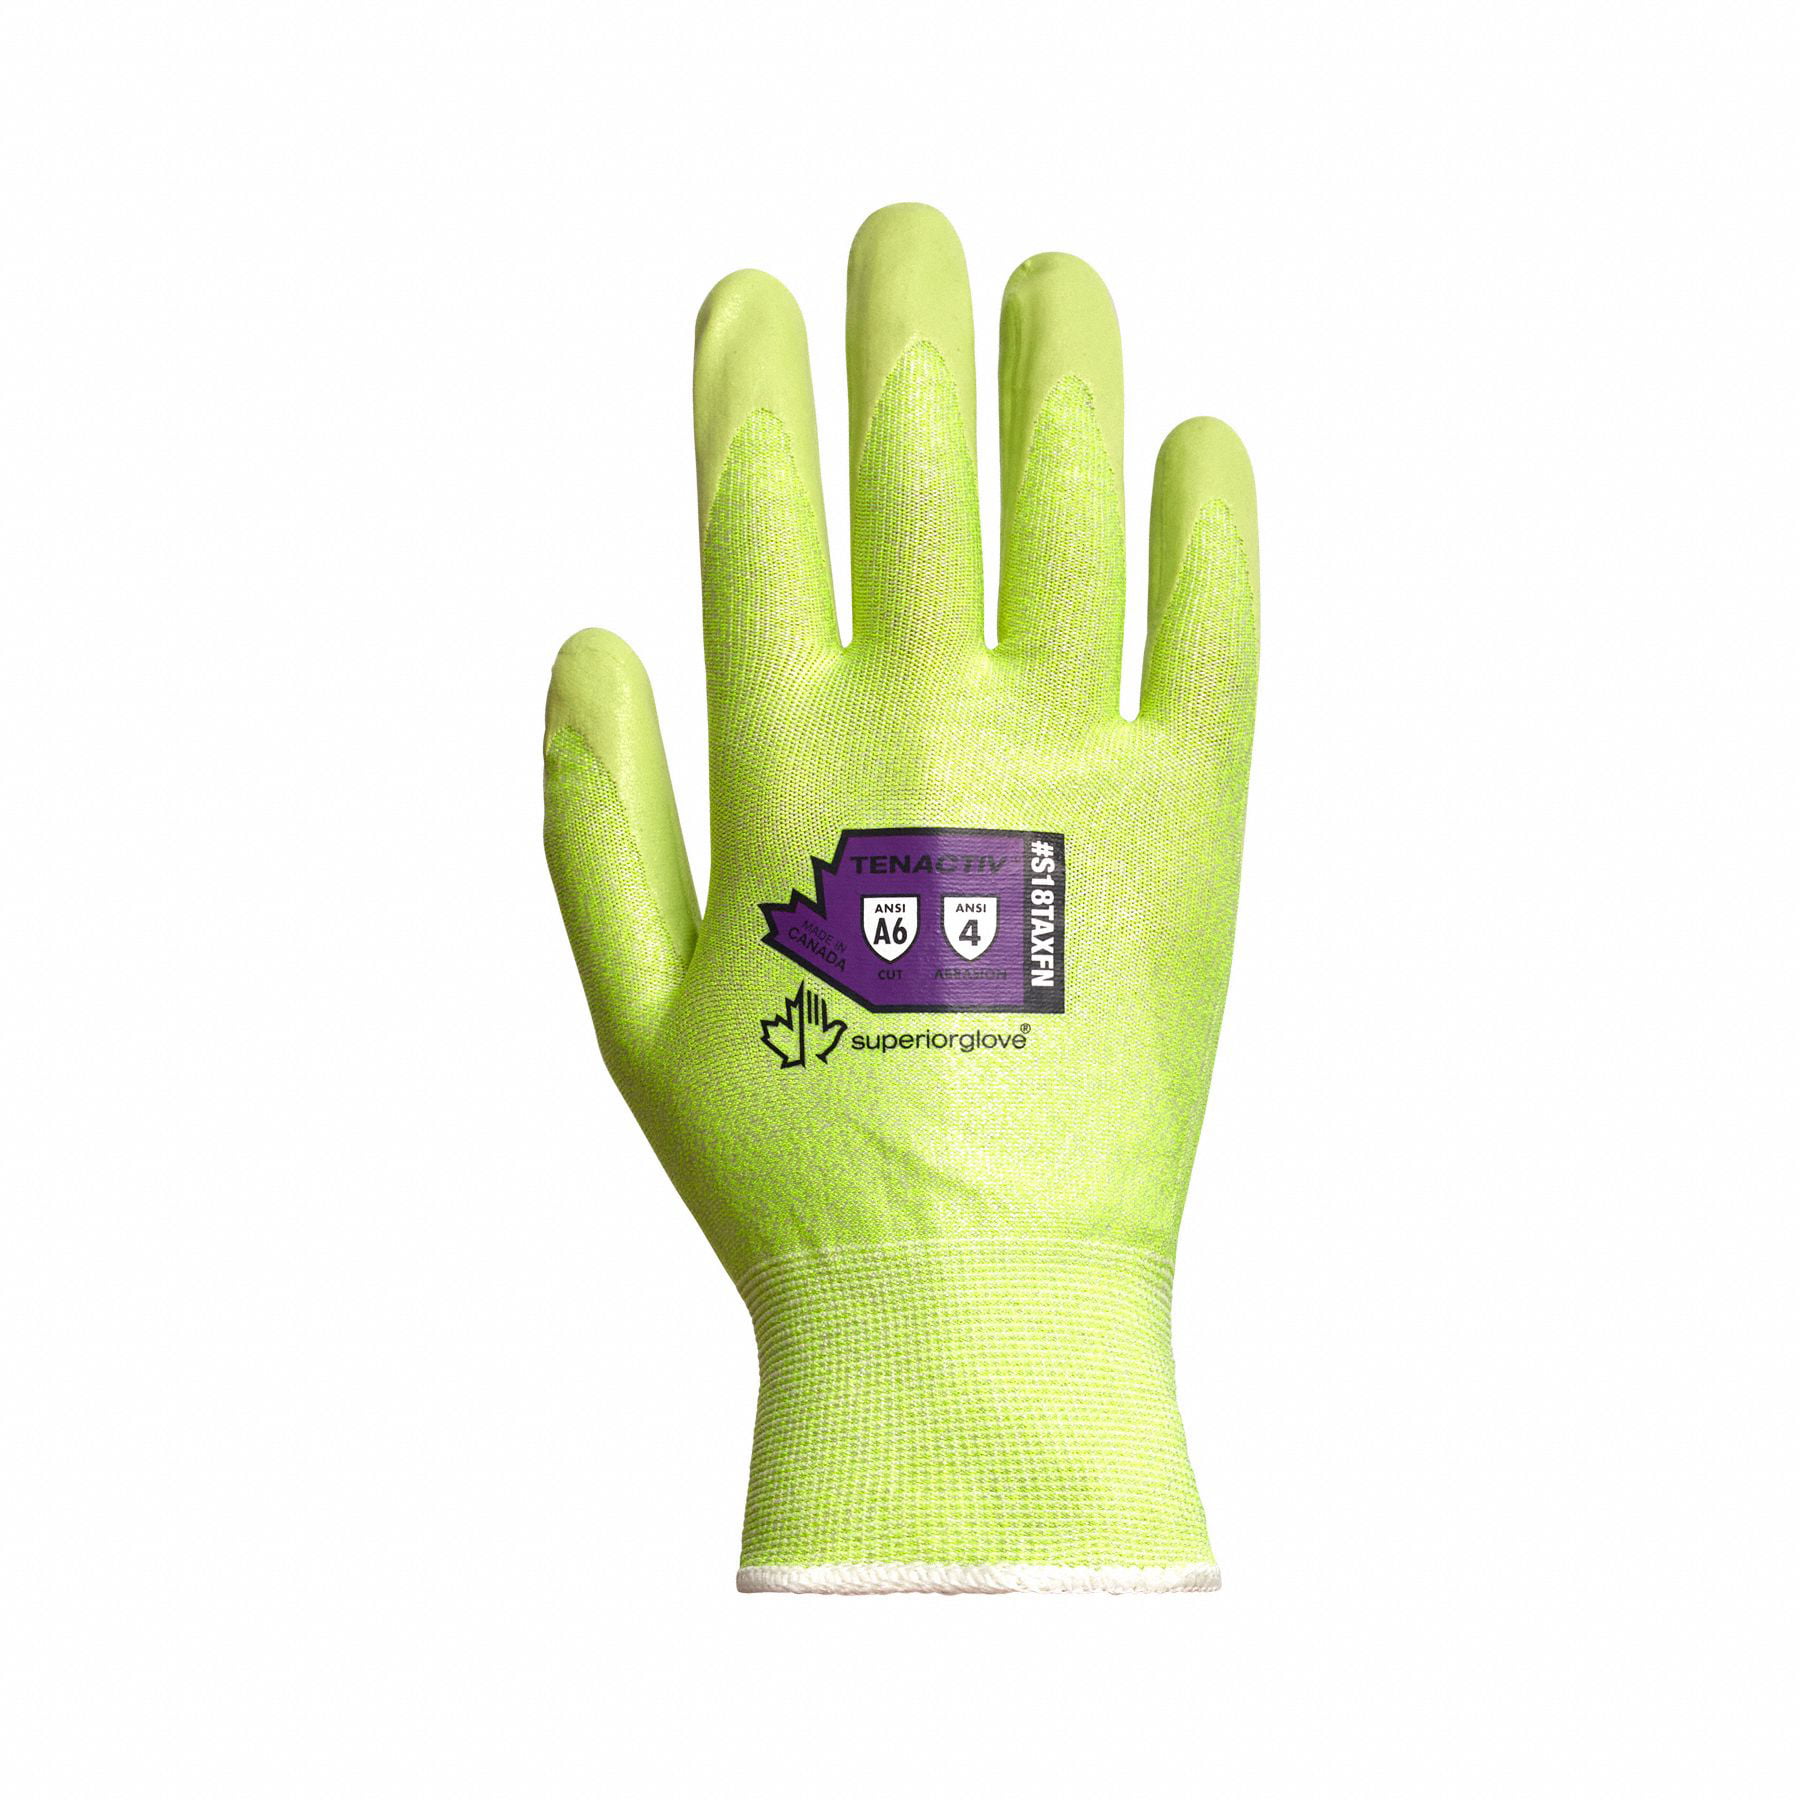 Work Gloves pack 10 TRAFFIGLOVE TG5020 3 DIGIT CUT LEVEL 5 SAFETY GLOVES SIZE 11 